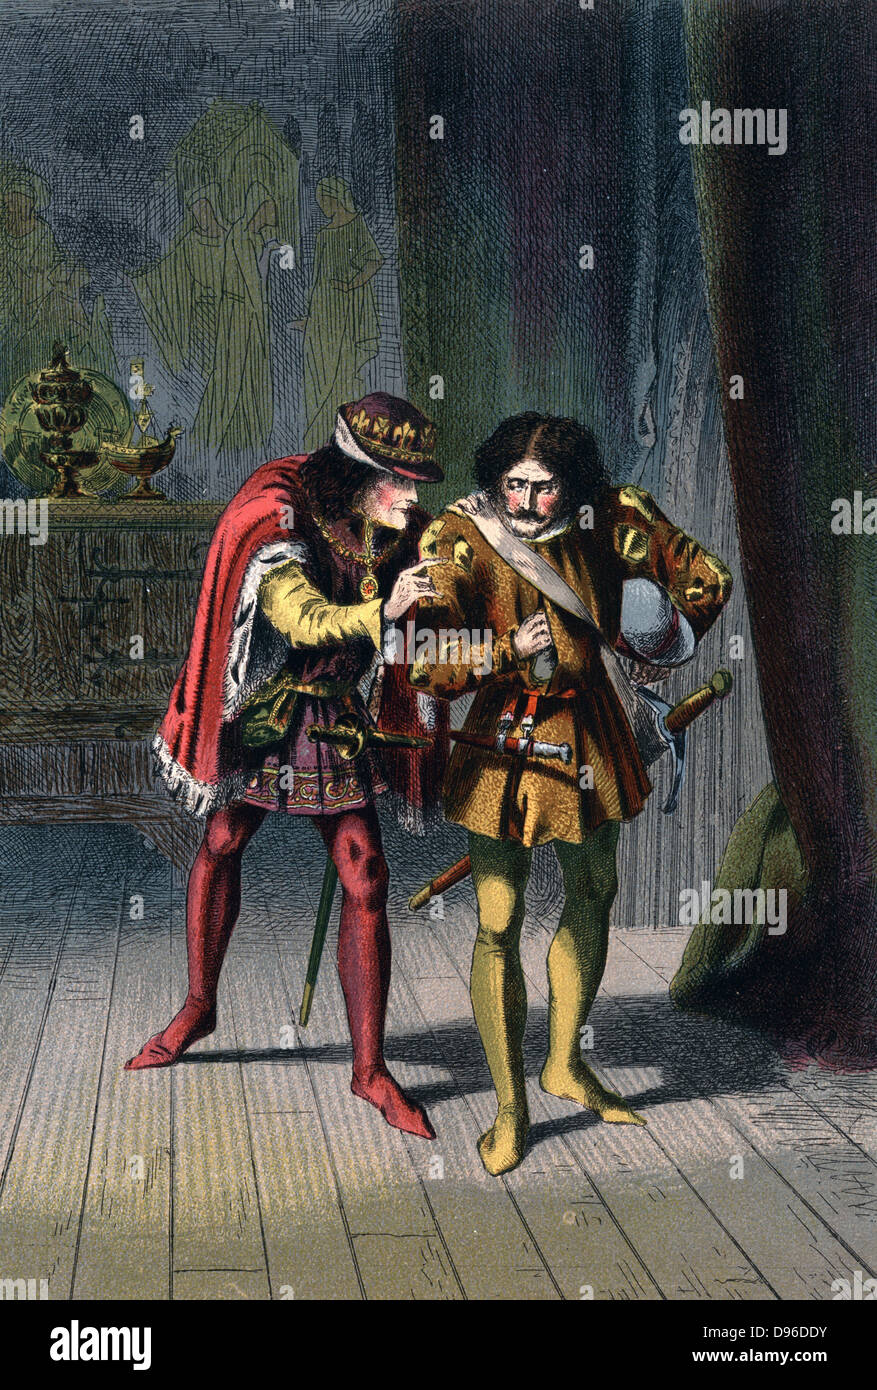 Richard III. (1452-1485) König von England von 1483, Sir James Tyrrell die Reihenfolge, in der die Söhne von Edward IV (Edward V und der Herzog von York), die Prinzen im Tower zu töten, mit dem Anreiz" sagen ... es ist getan, und ich werde Dich lieben und Dir zu bevorzugen." Illustration von Robert Dudley für Shakespeare Richard III. Akt IV. Sc. II Veröffentlicht c 1858. Chromolithograph Stockfoto